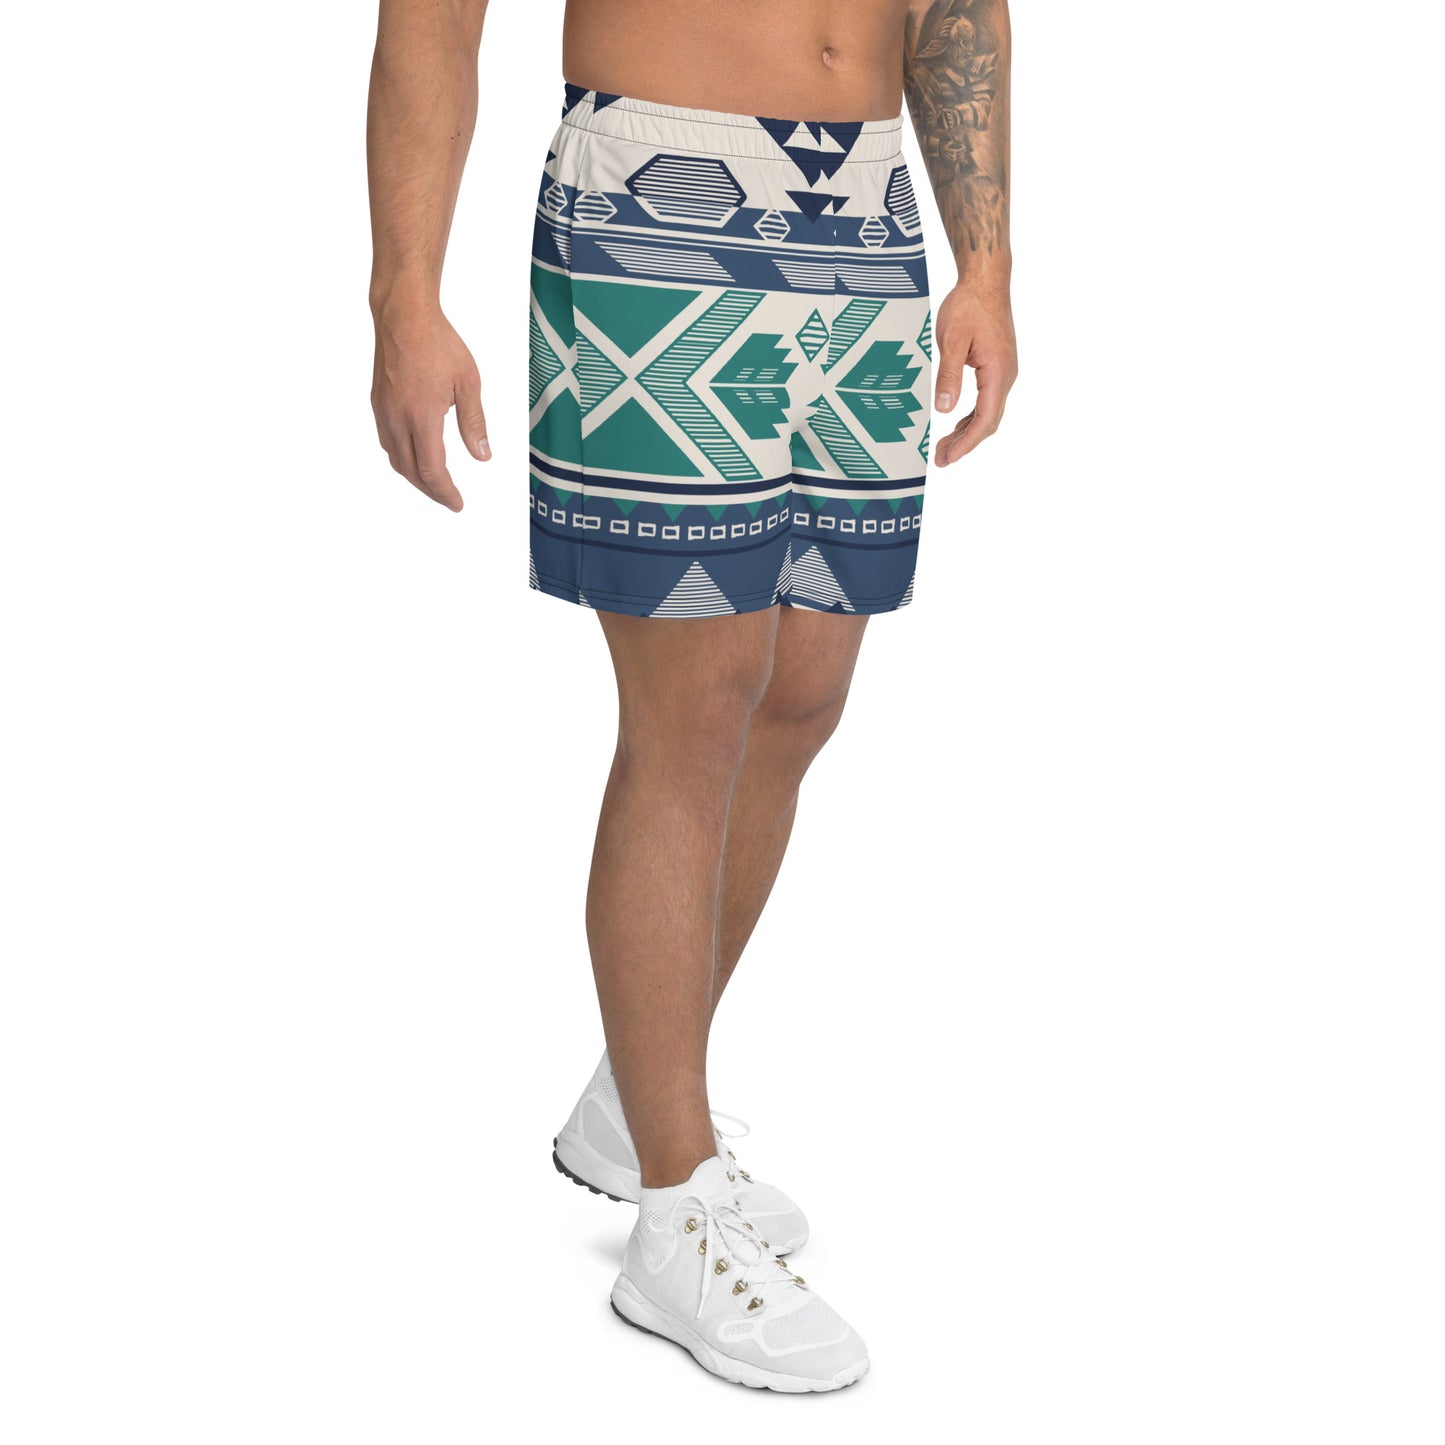 Printed Tribal Athletic Long Shorts